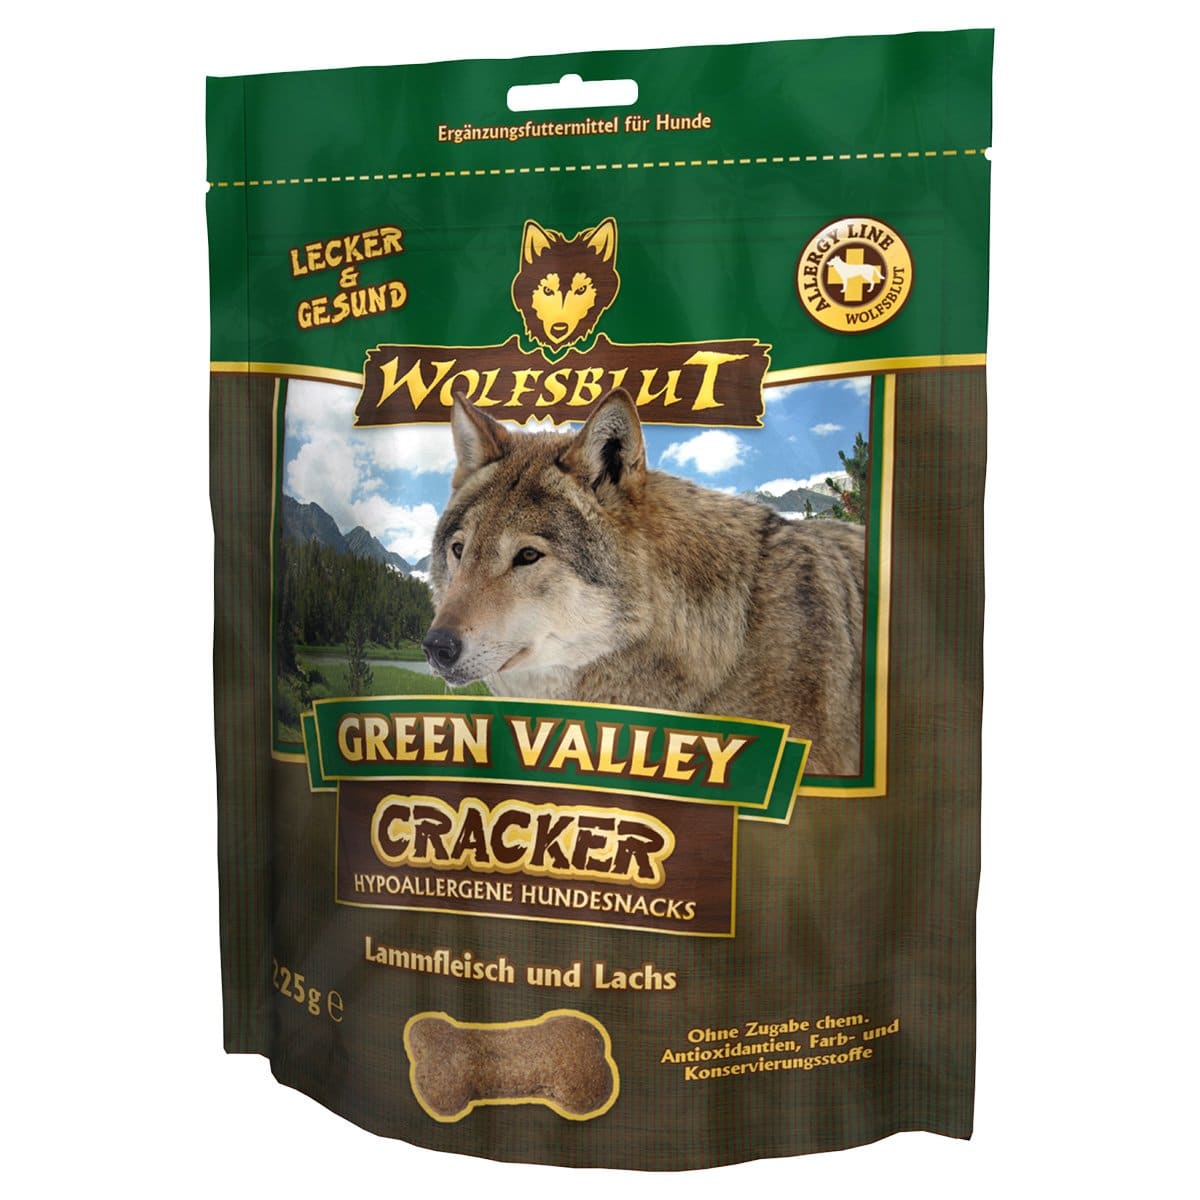 Wolfsblut Cracker Green Valley Lamm & Lachs 225g